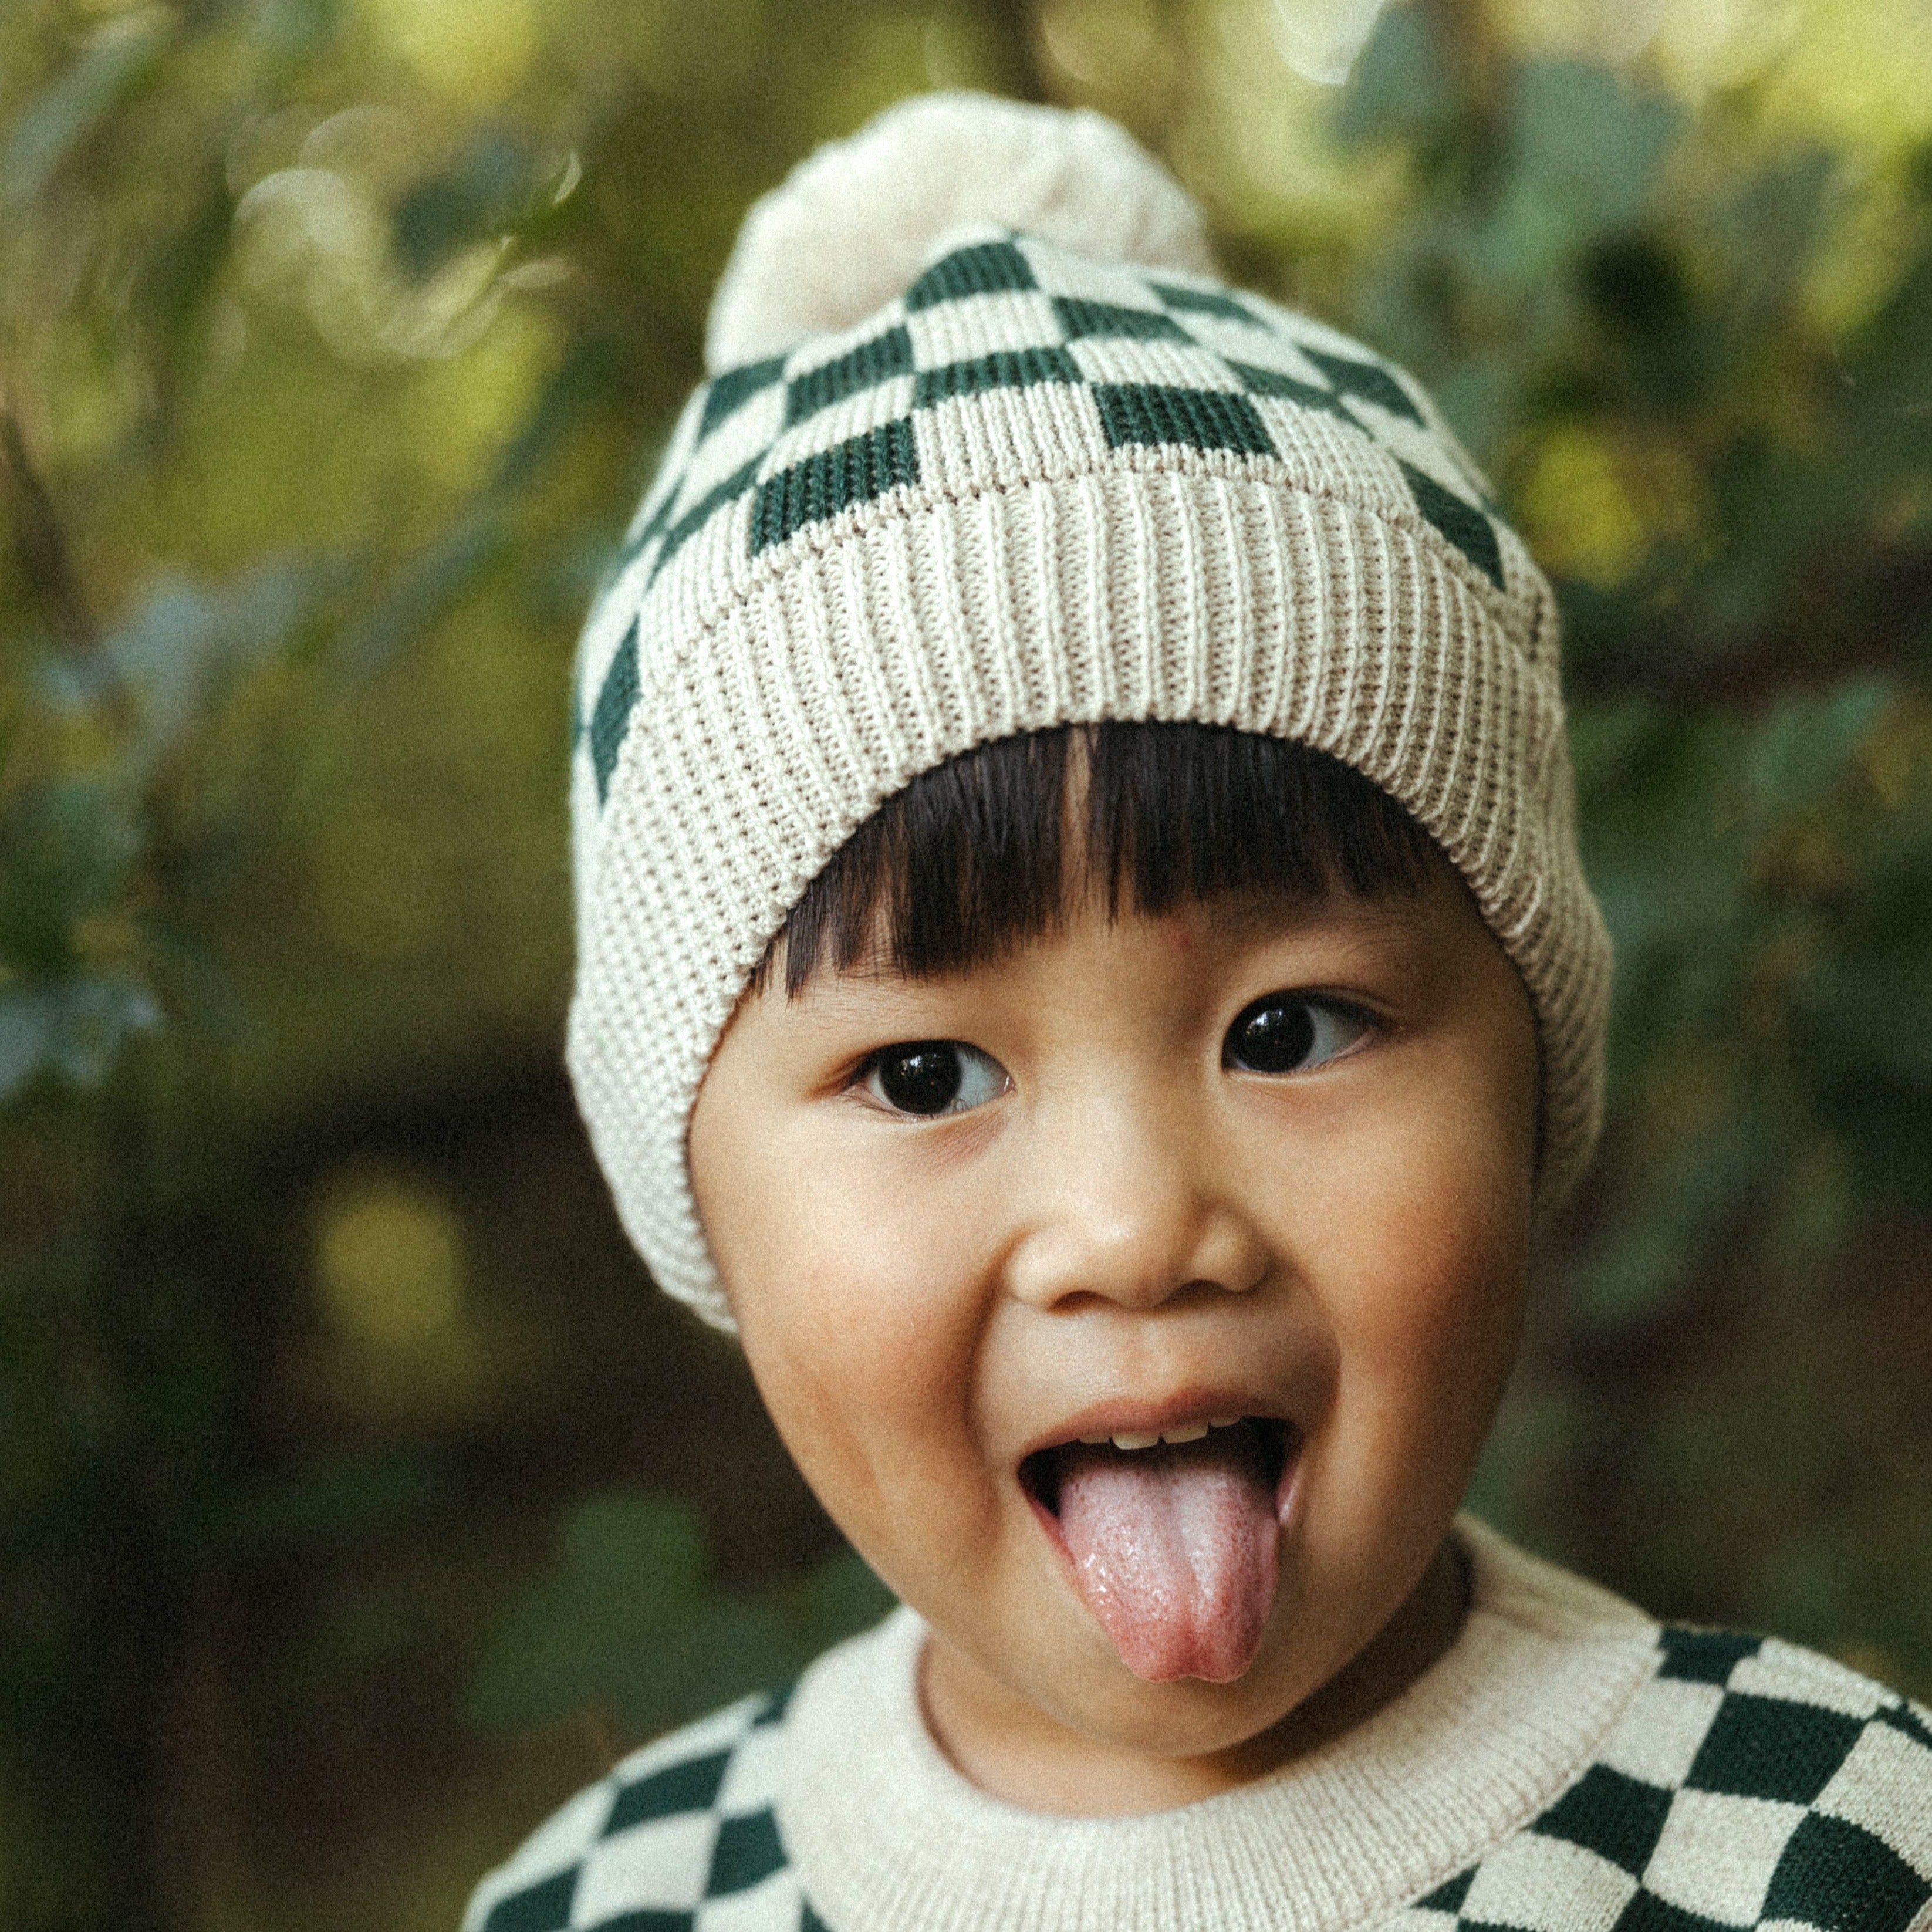 Historia de niños: sombrero de tablero de ajedrez verde merino